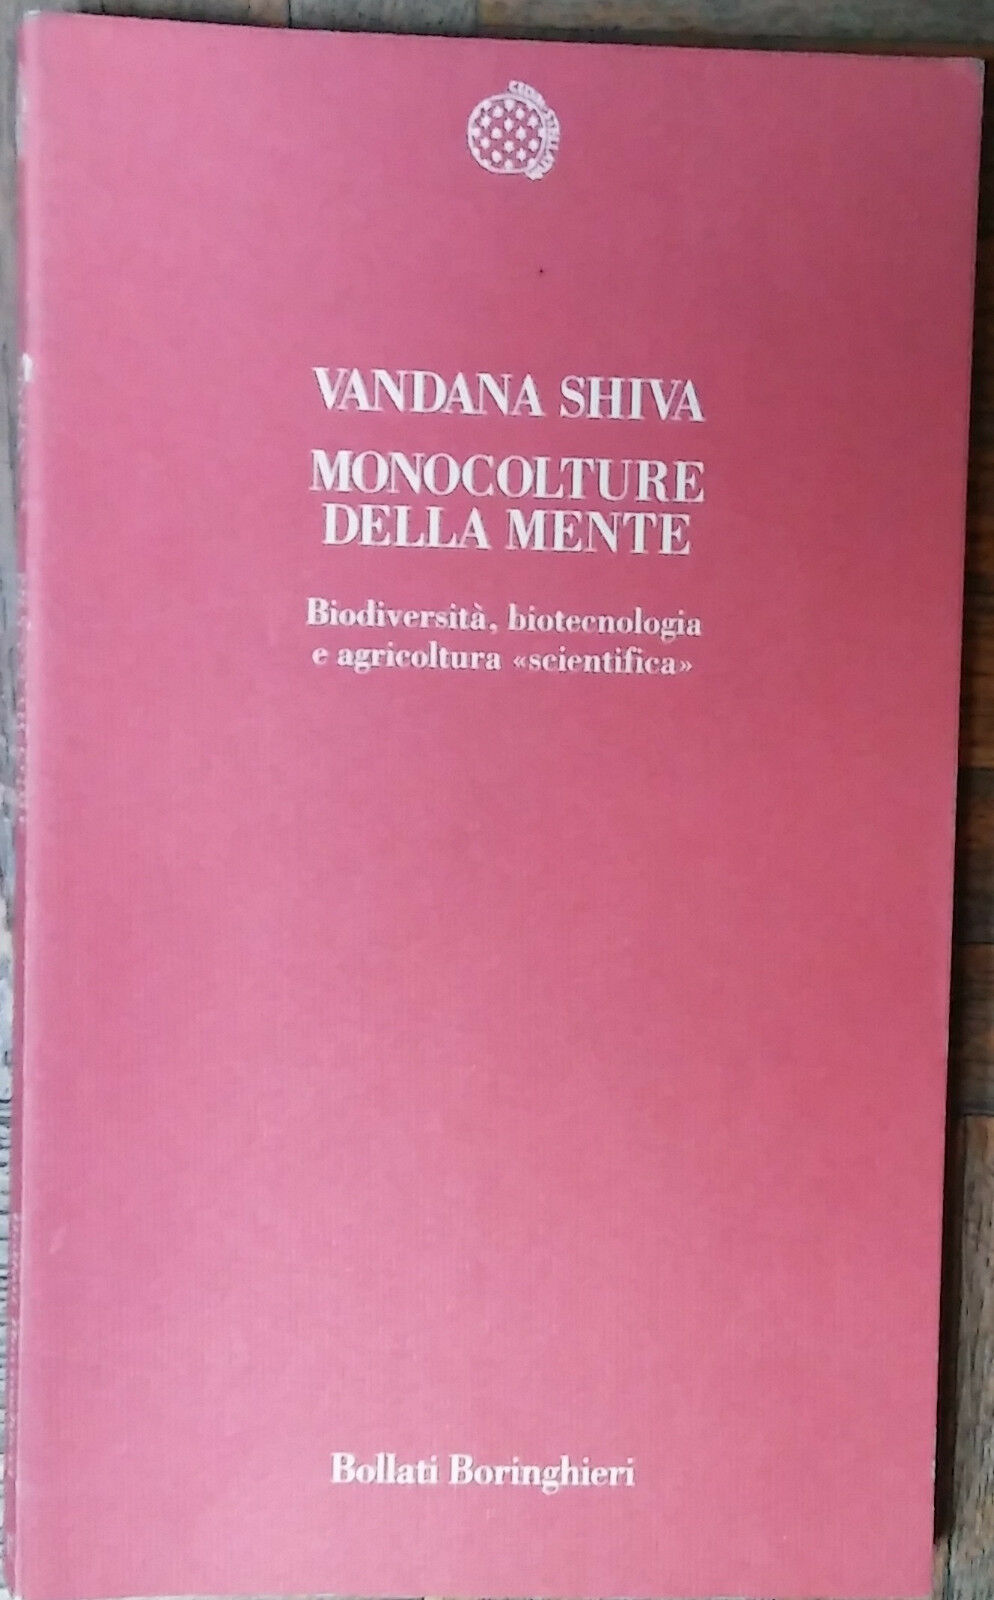 Monoculture della mente - Vandana Shiva - Bollati Boringhieri,1995 - R